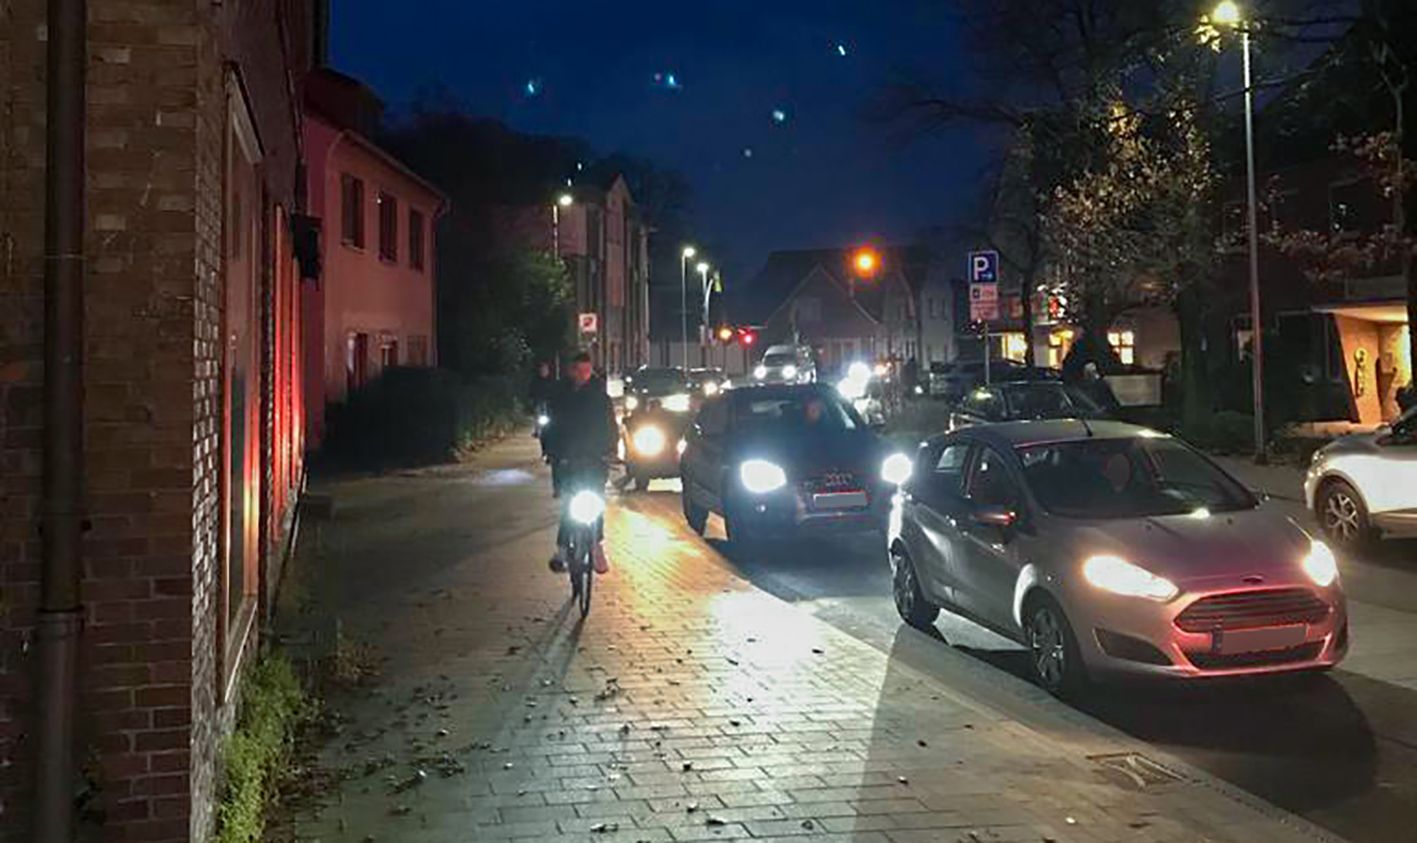 Besonders morgens staut es sich: Radfahrer müssen in der Fahrradstraße auf den Gehweg ausweichen, weil sie auf der Fahrbahn keinen Platz mehr haben. Foto: privat